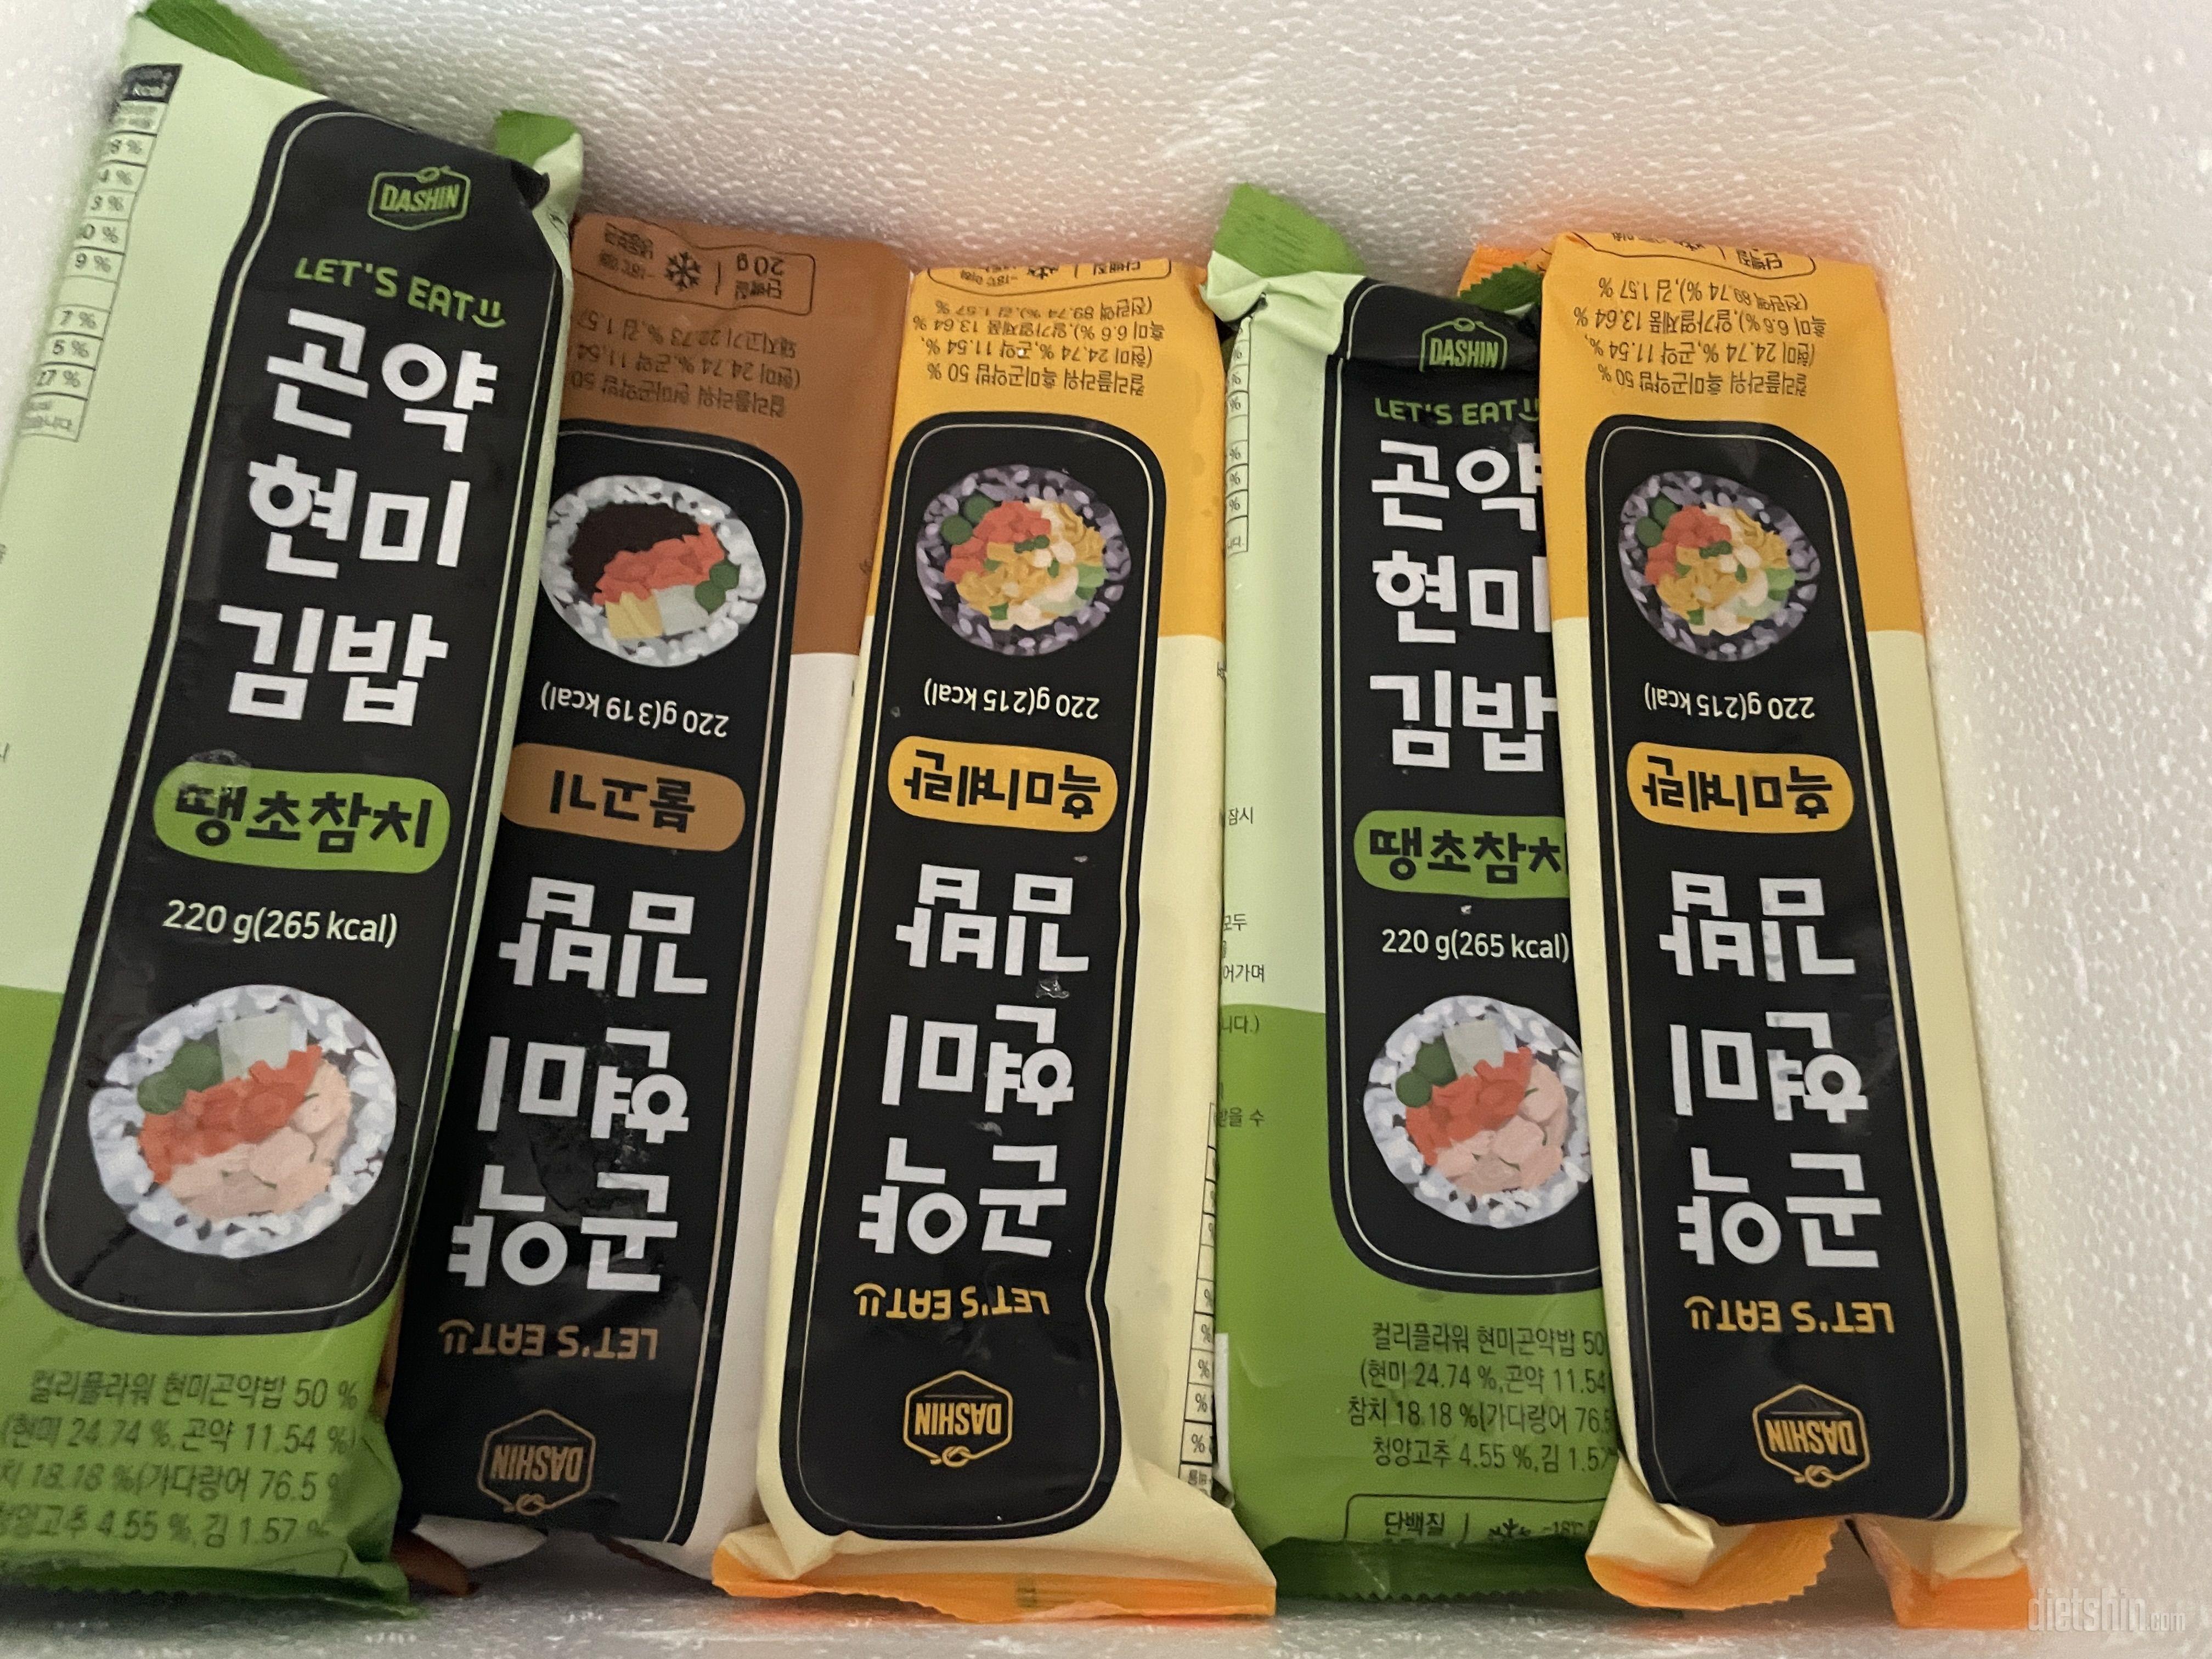 진짜 그냥 맛있는 김밥맛이네요 ㅋㅋ탄